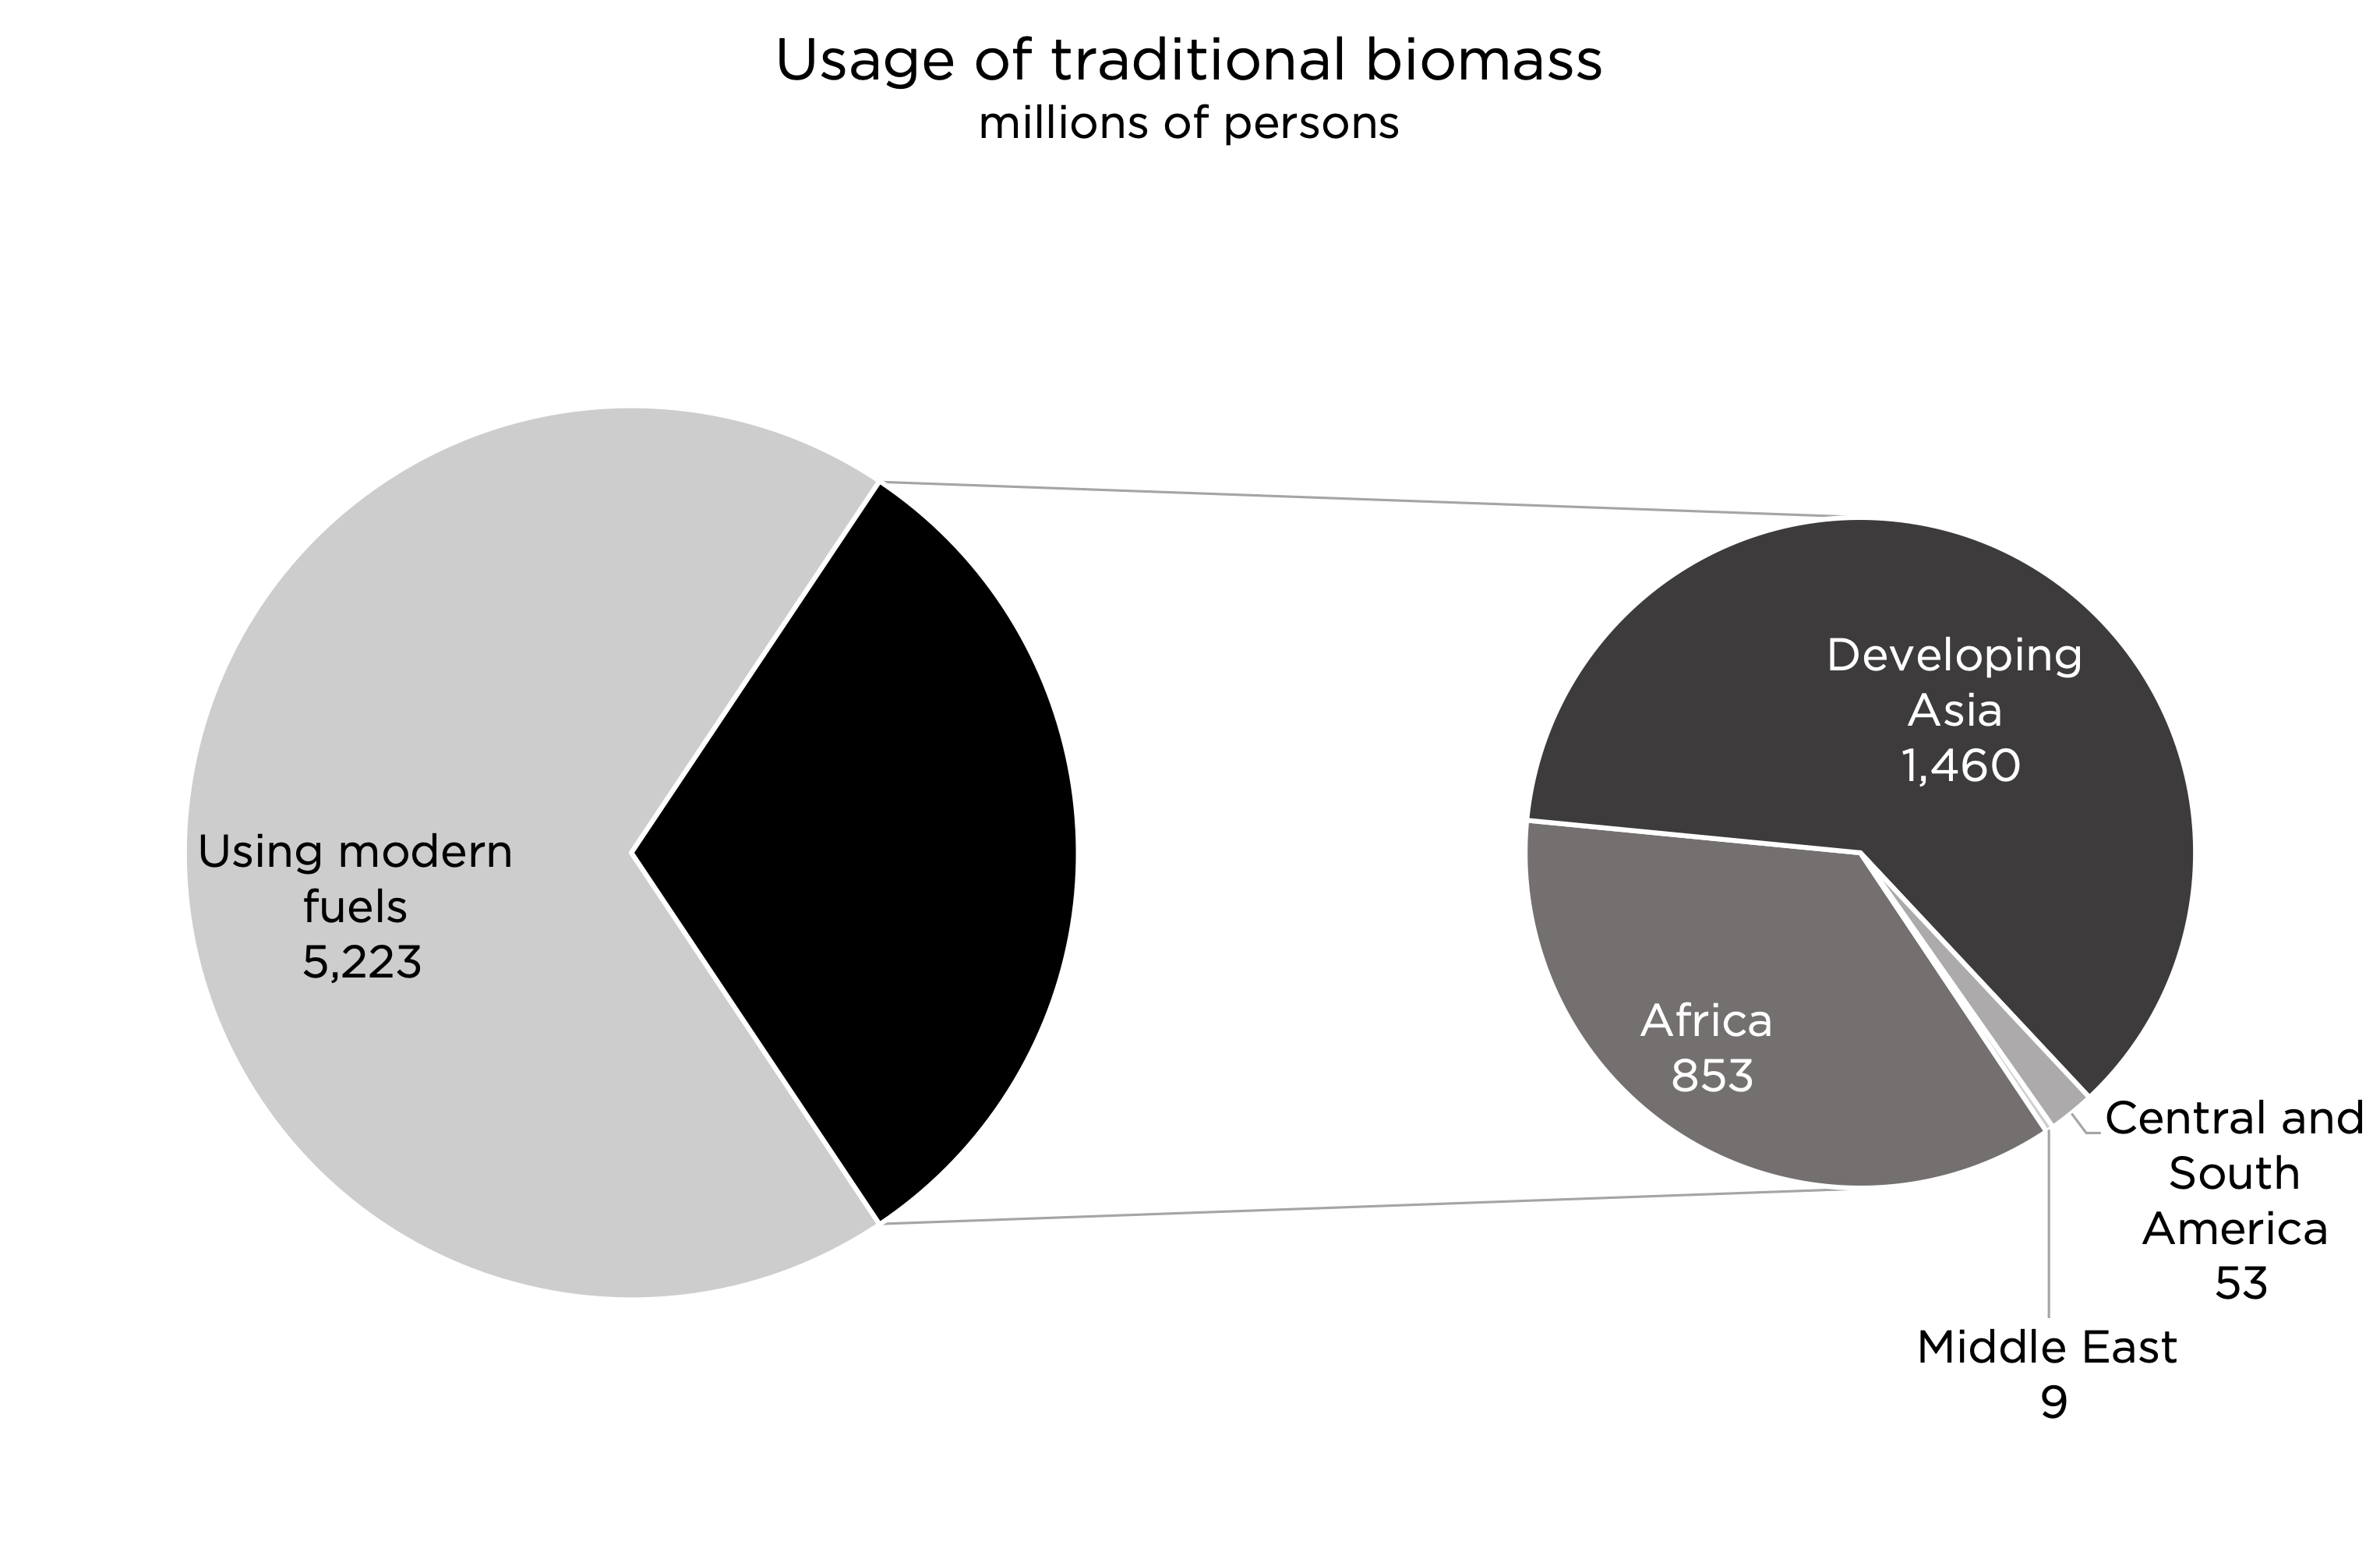 Biomass use